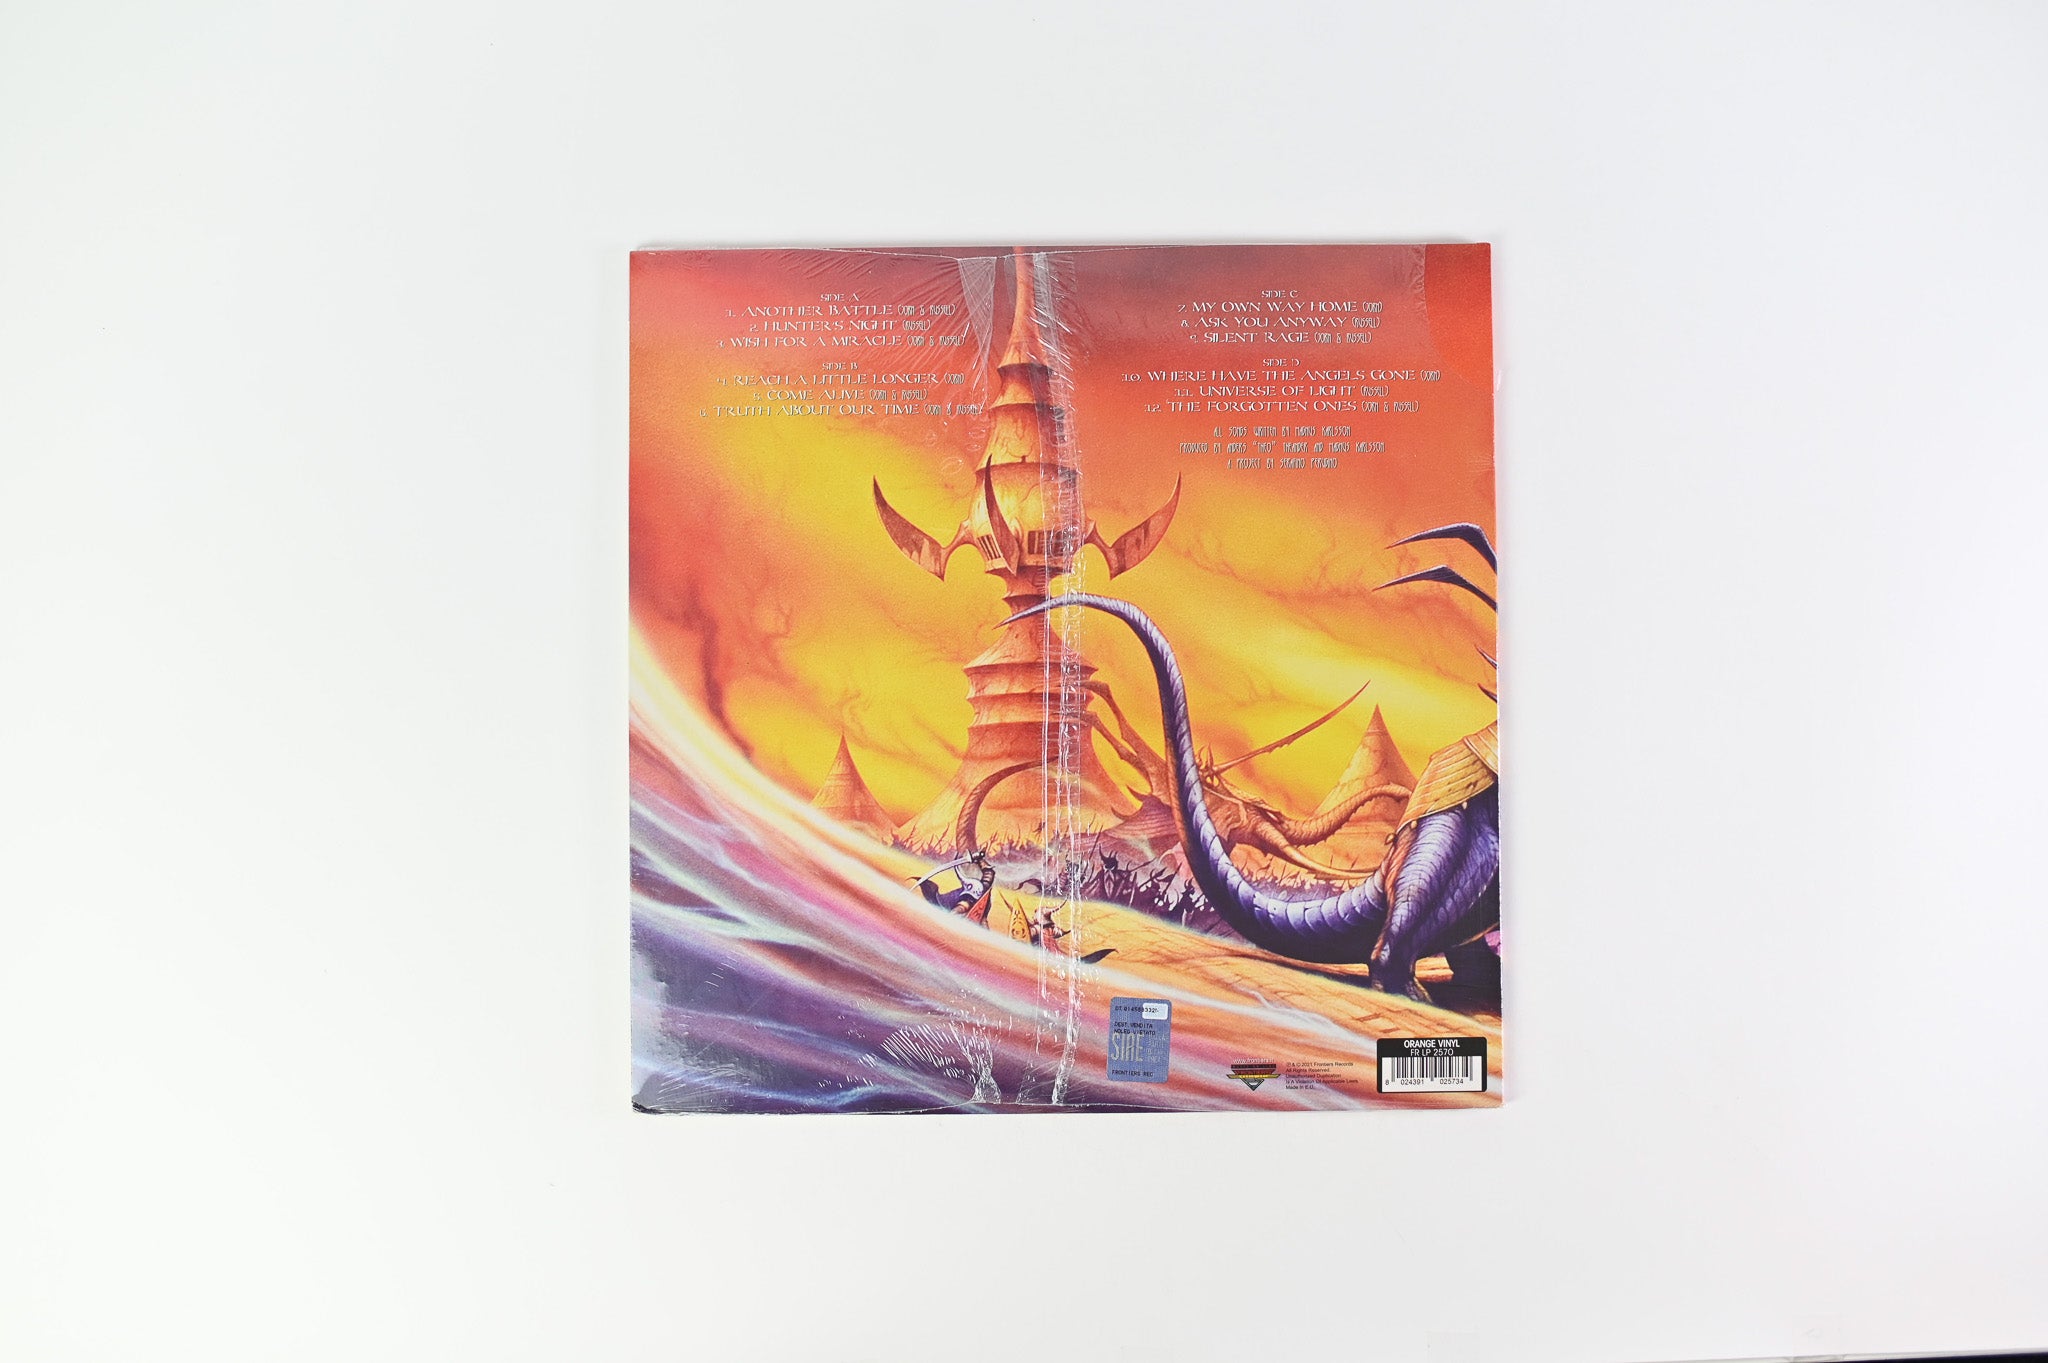 Allen - Lande - The Battle on Frontiers Ltd Orange Vinyl Reissue Sealed